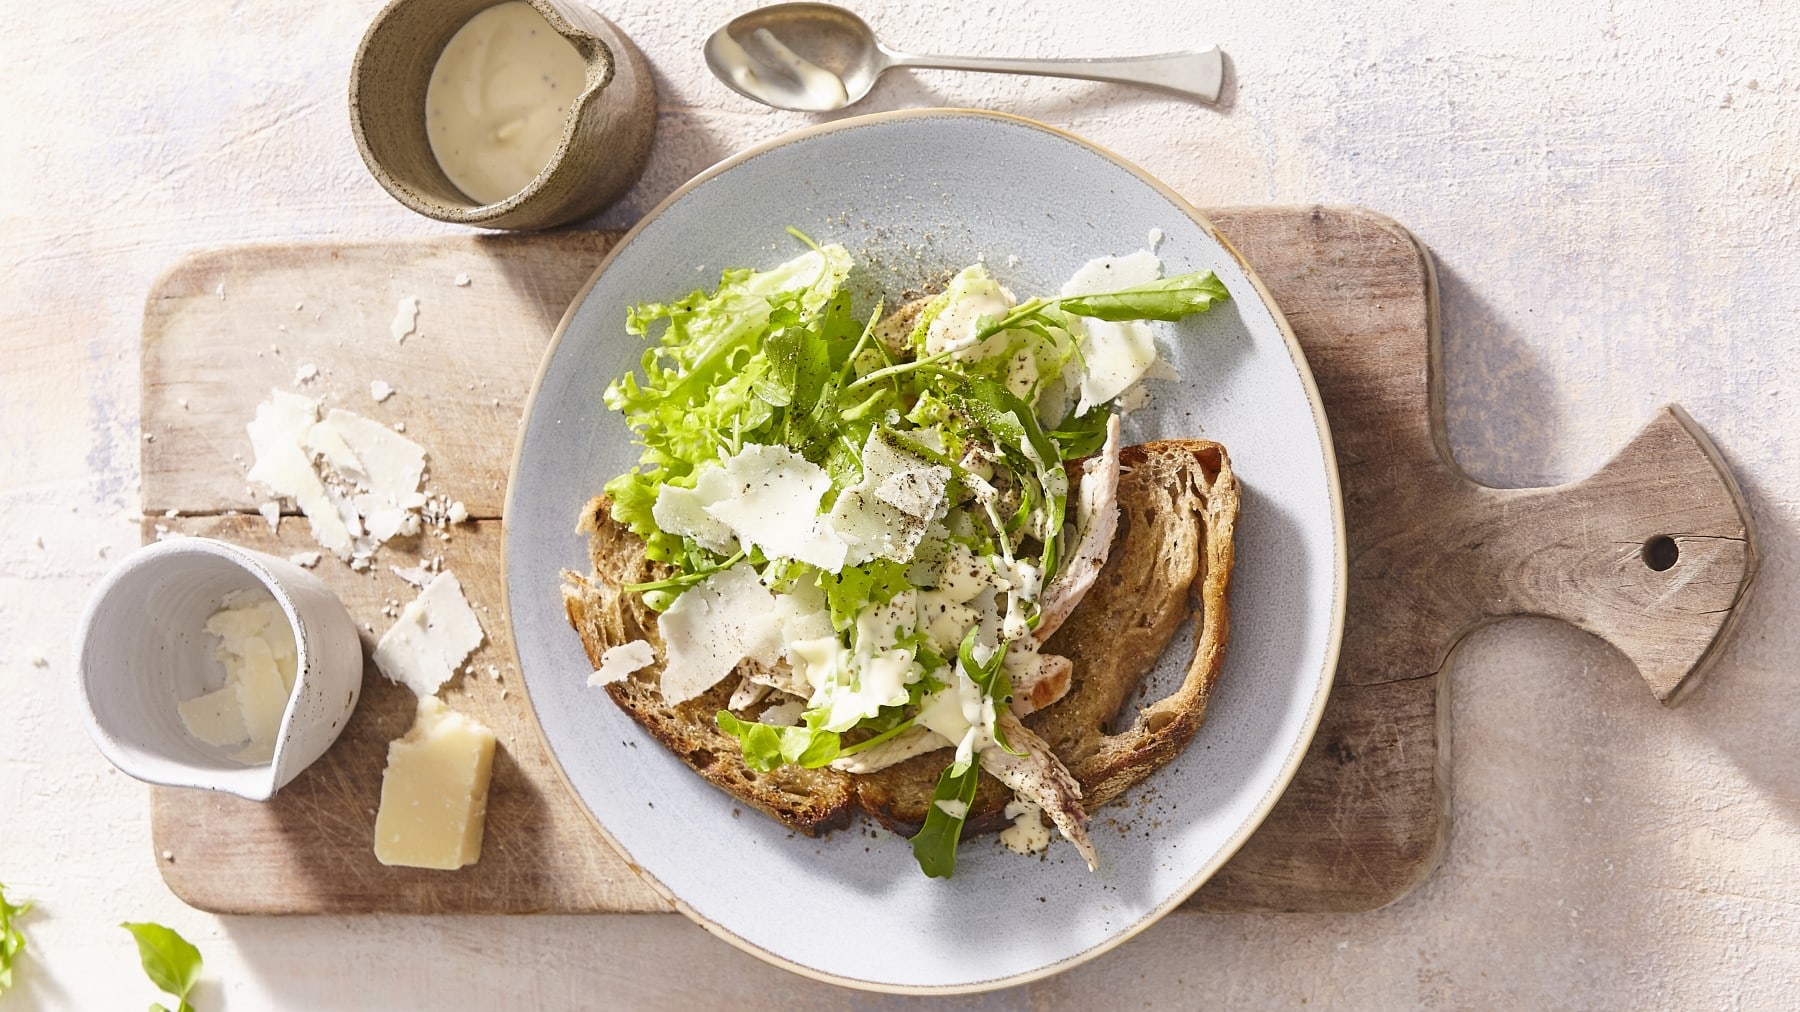 Grünes Caesar-Salat-Sandwich mit Parmesan, Geflügelbrust, Salat und selbstgemachtem Dressing auf rustikalen Bauernbrot, serviert auf einem weißen Teller auf einem Holzbrett.